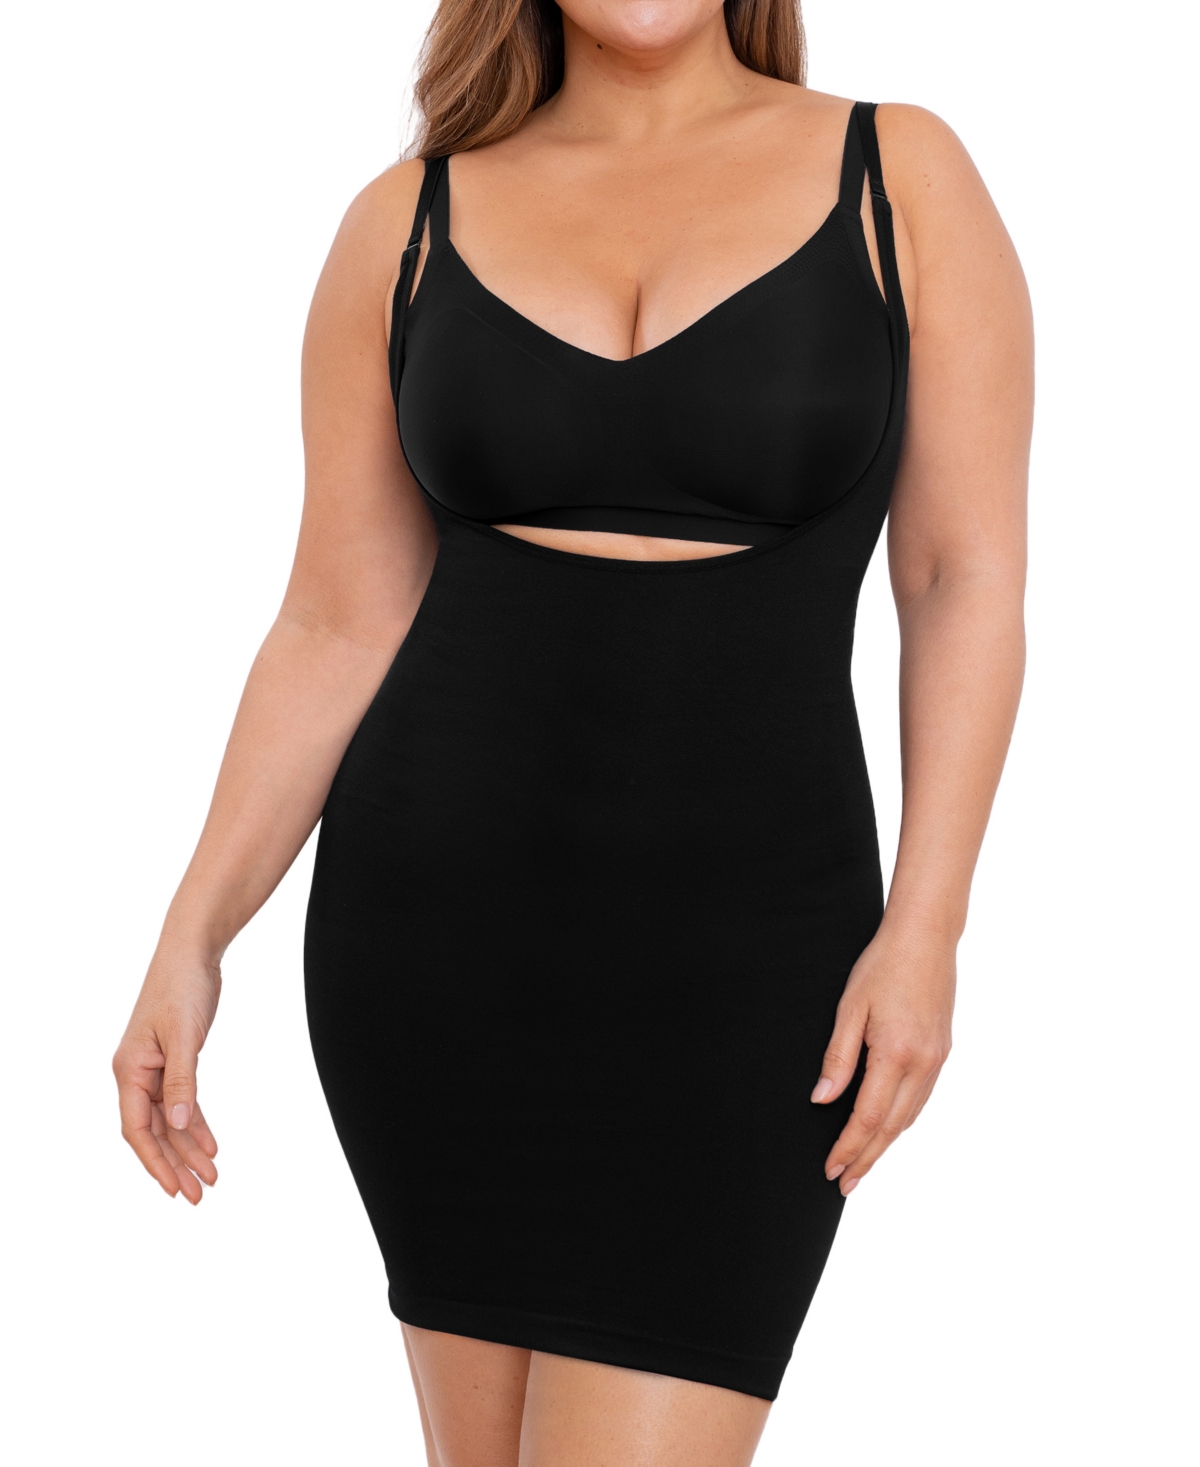 Women's Open Bust Shaper Slip Dress 73007 - Black